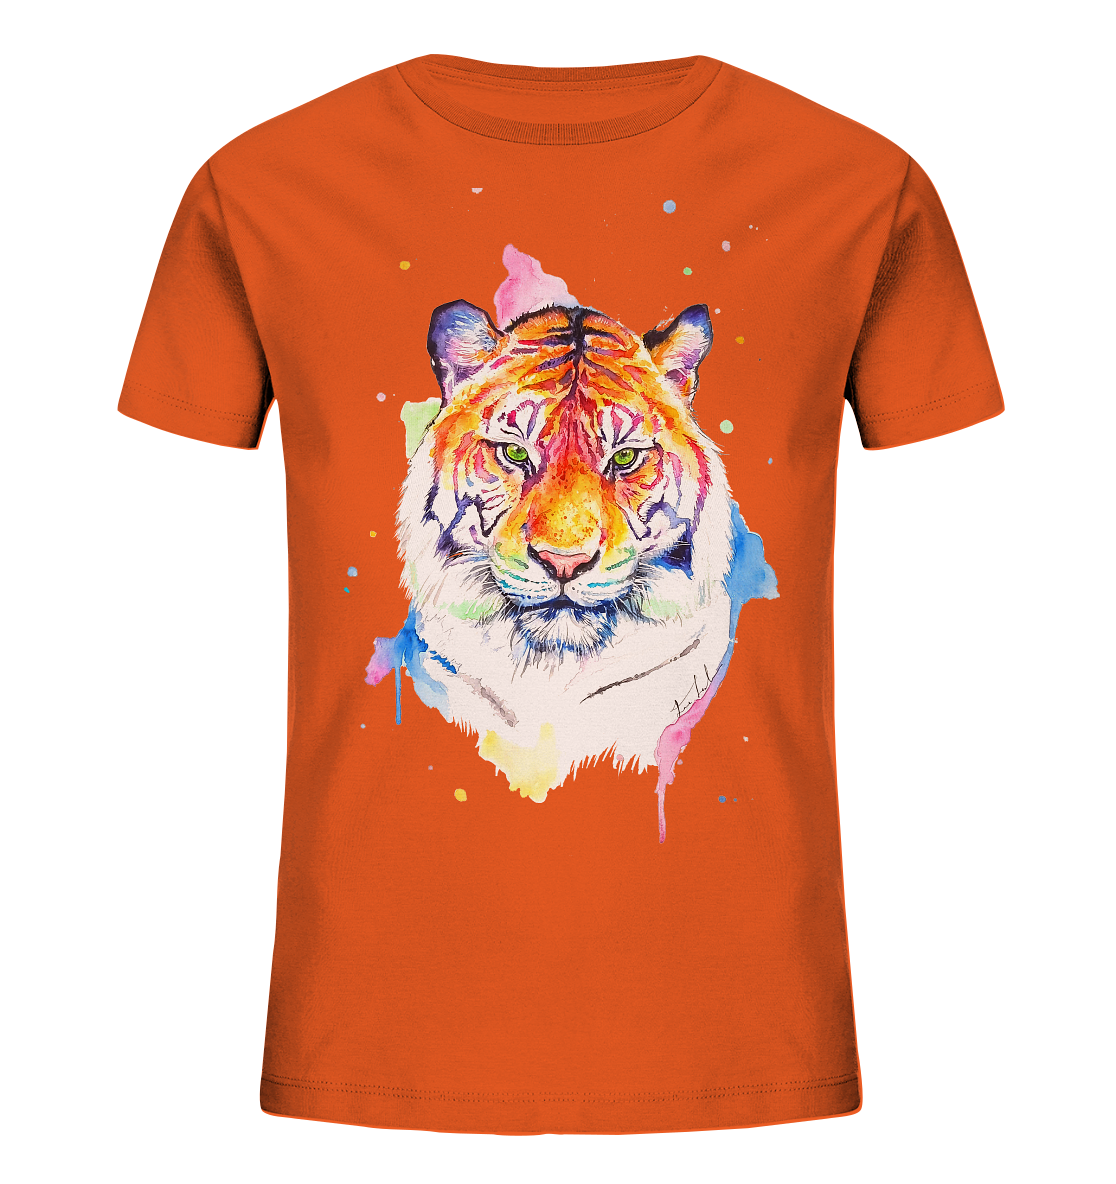 Bunter Tiger - Kids Organic Shirt